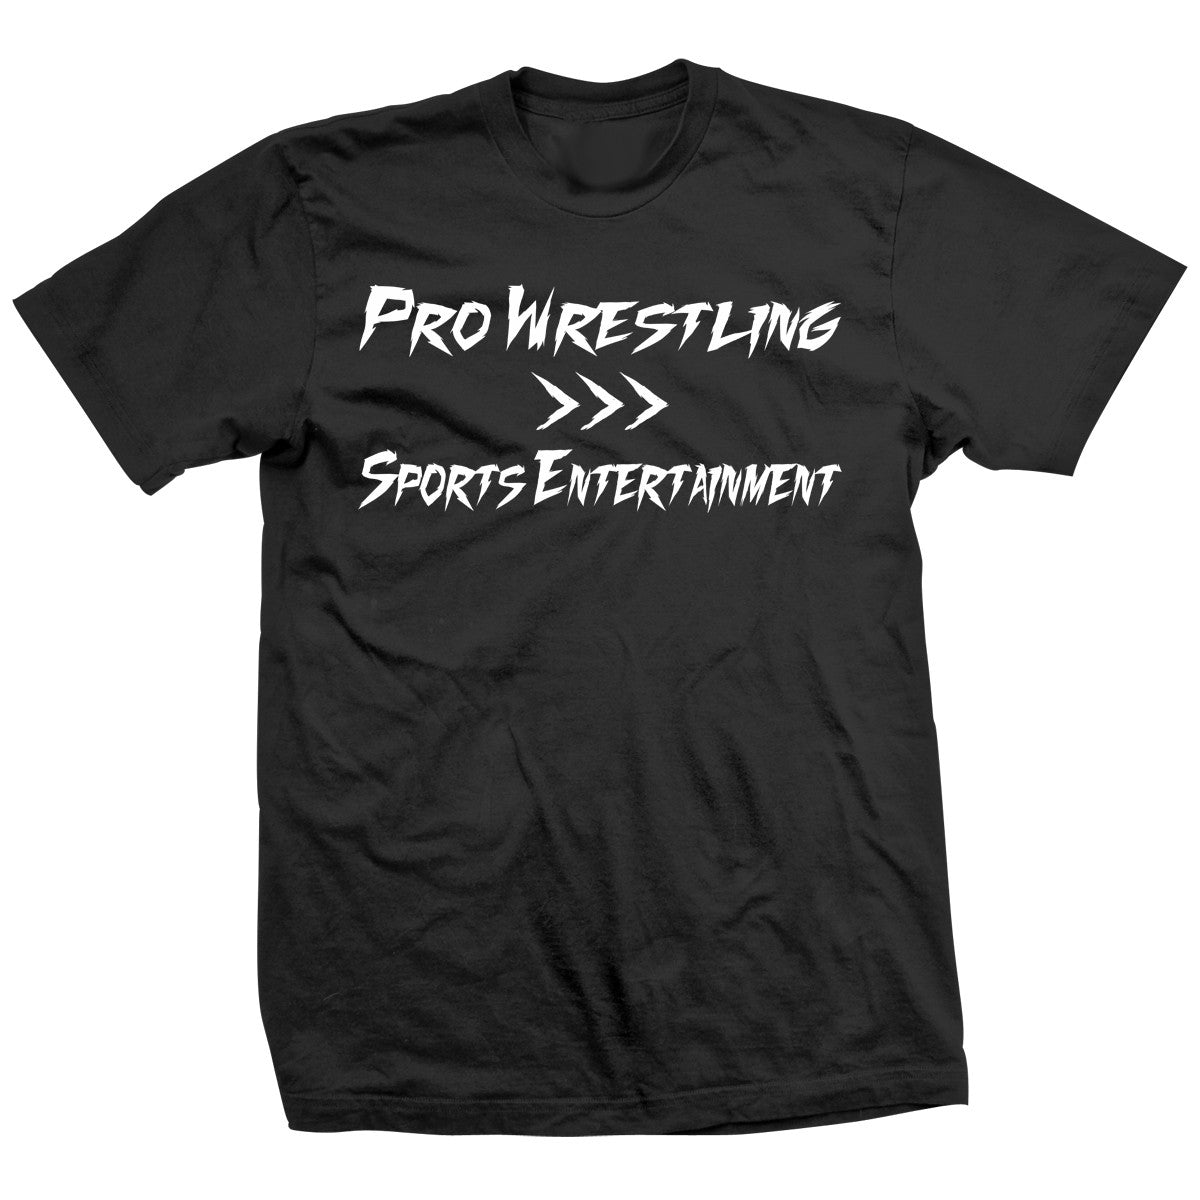 Aaron Mercer Wrestling Entertainment Shirt